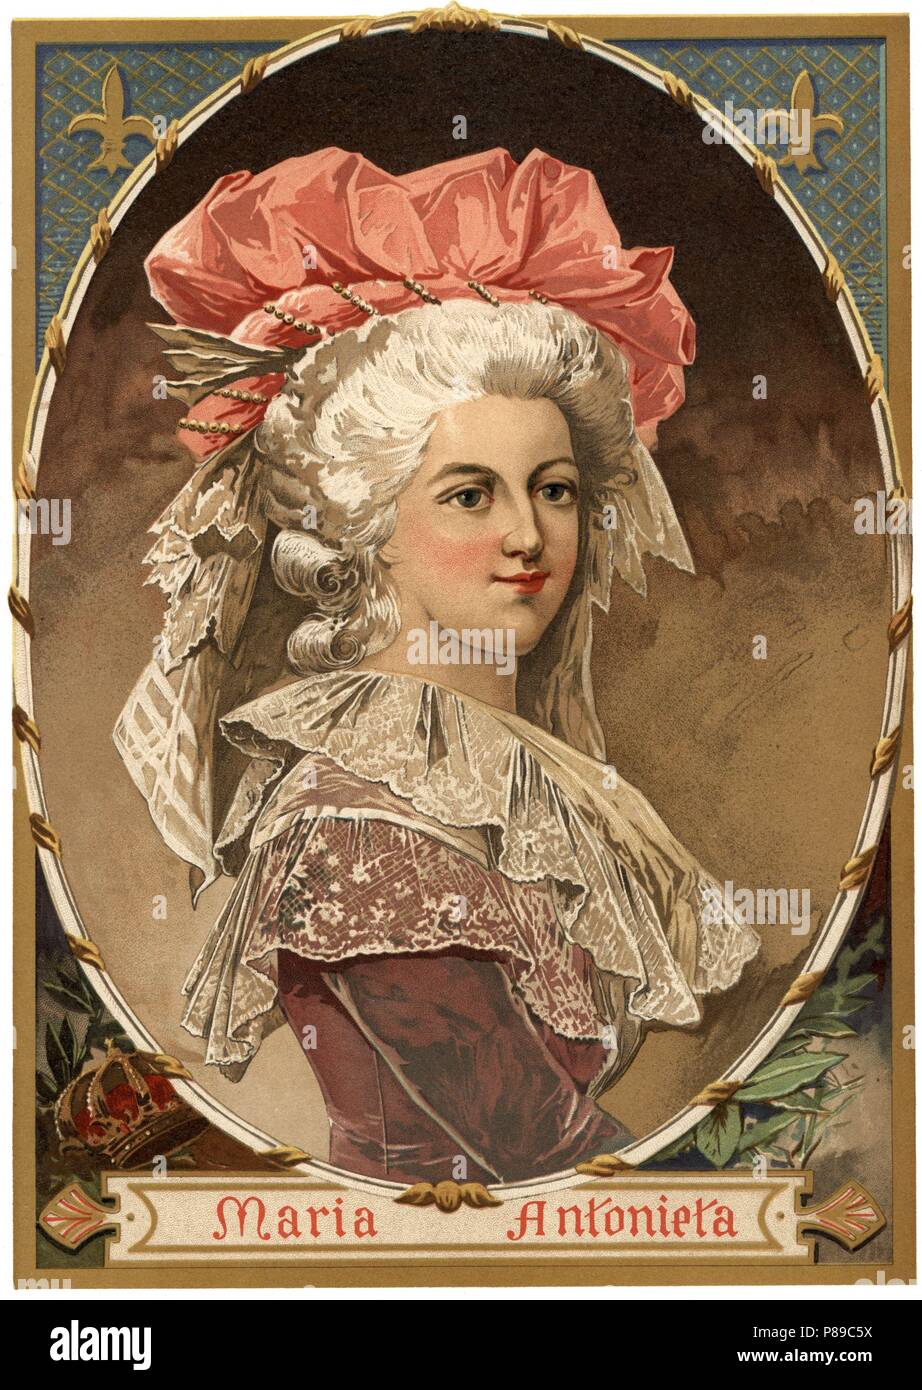 Maria Antonieta Josefa Juana de Habsburgo-Lorena, más conocida como Maria Antonieta de Austria (1755-1793), archiduquesa de Austria y reina consorte de Francia y de Navarra. Grabado de 1896. Stock Photo